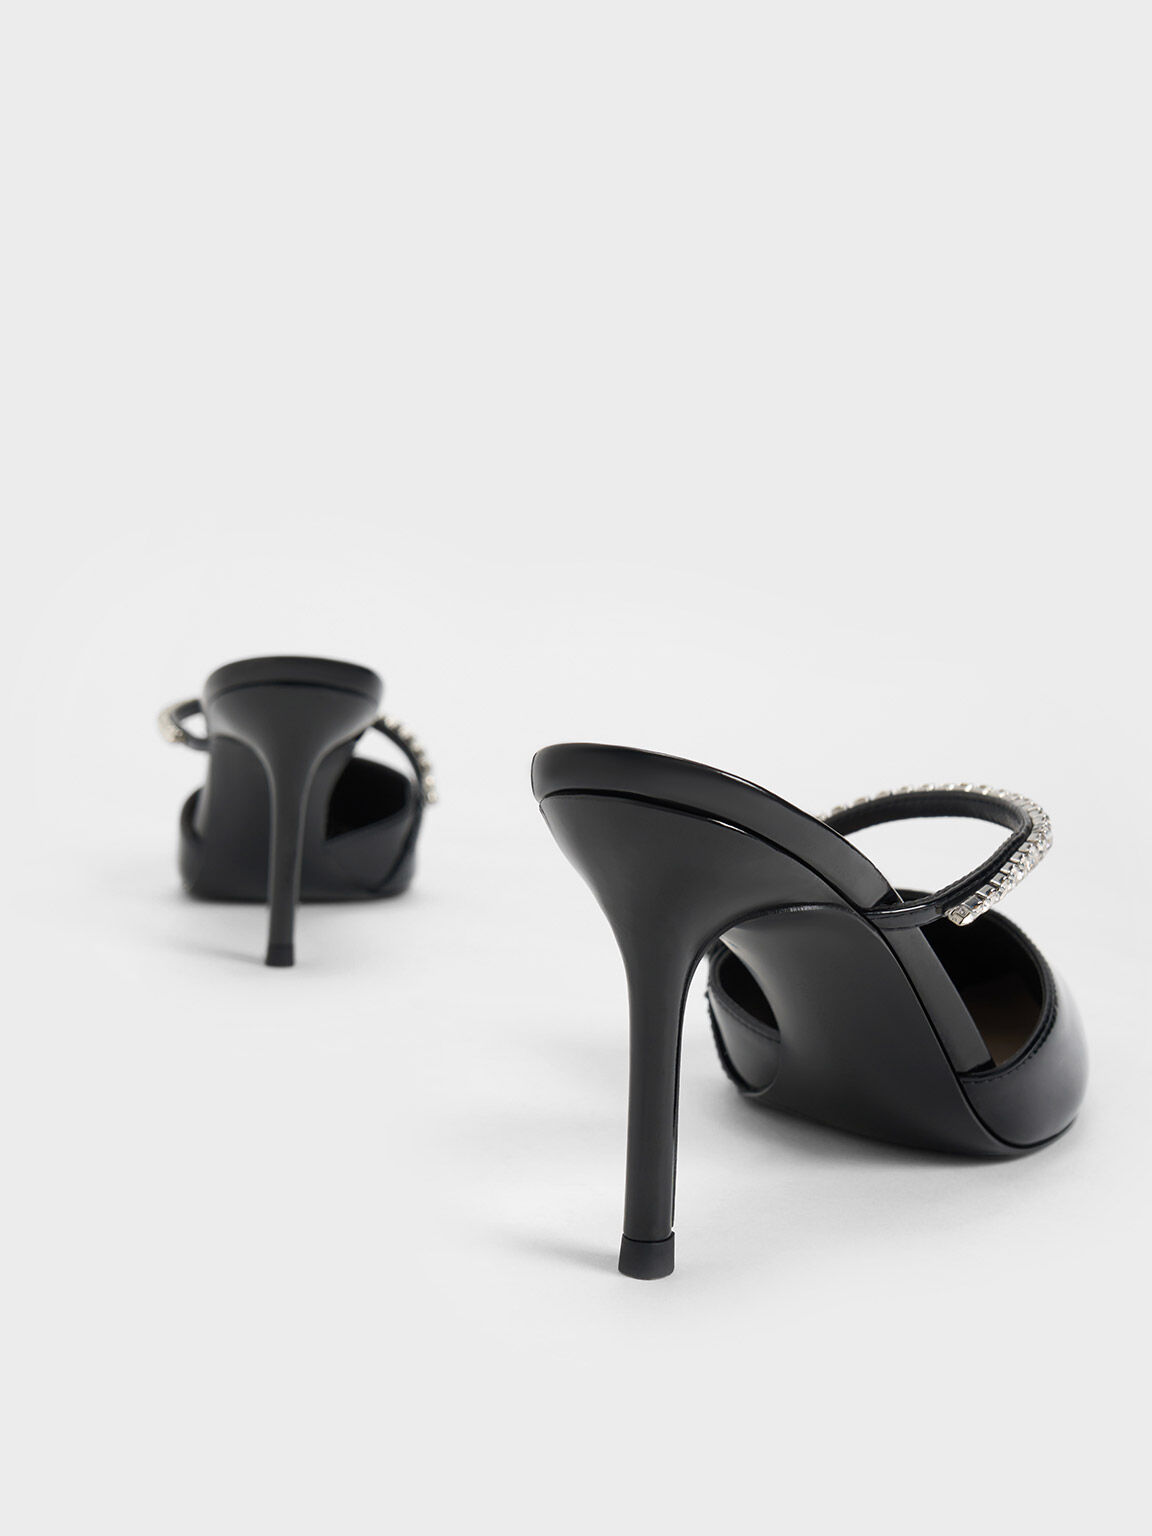 Sepatu Mules Gem-Encrusted Stiletto, Black Patent, hi-res